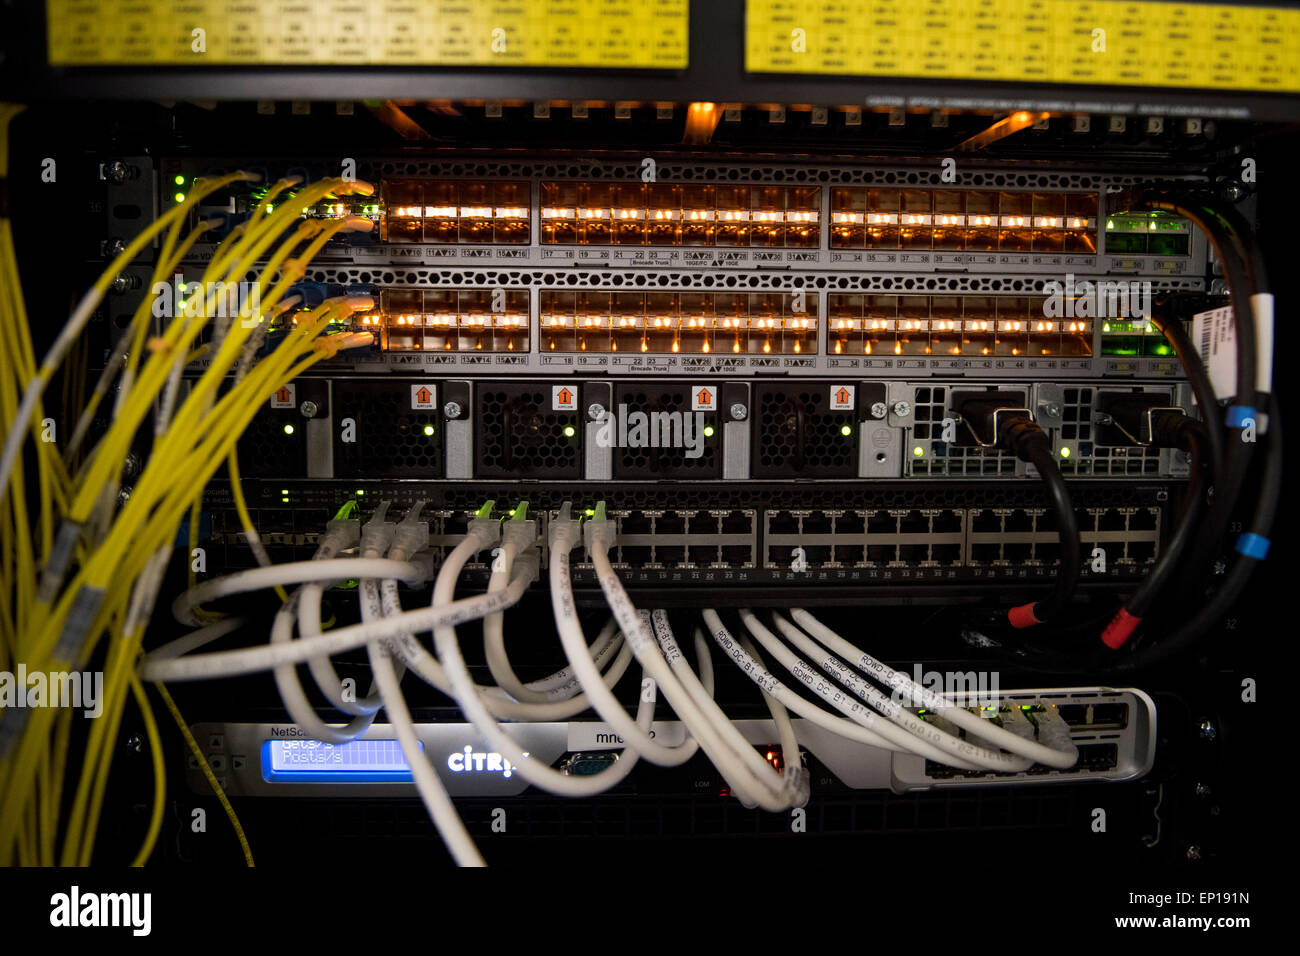 L'arrière d'un ordinateur serveur utilisé pour le cloud computing montrant les routeurs et les câbles réseau. Banque D'Images